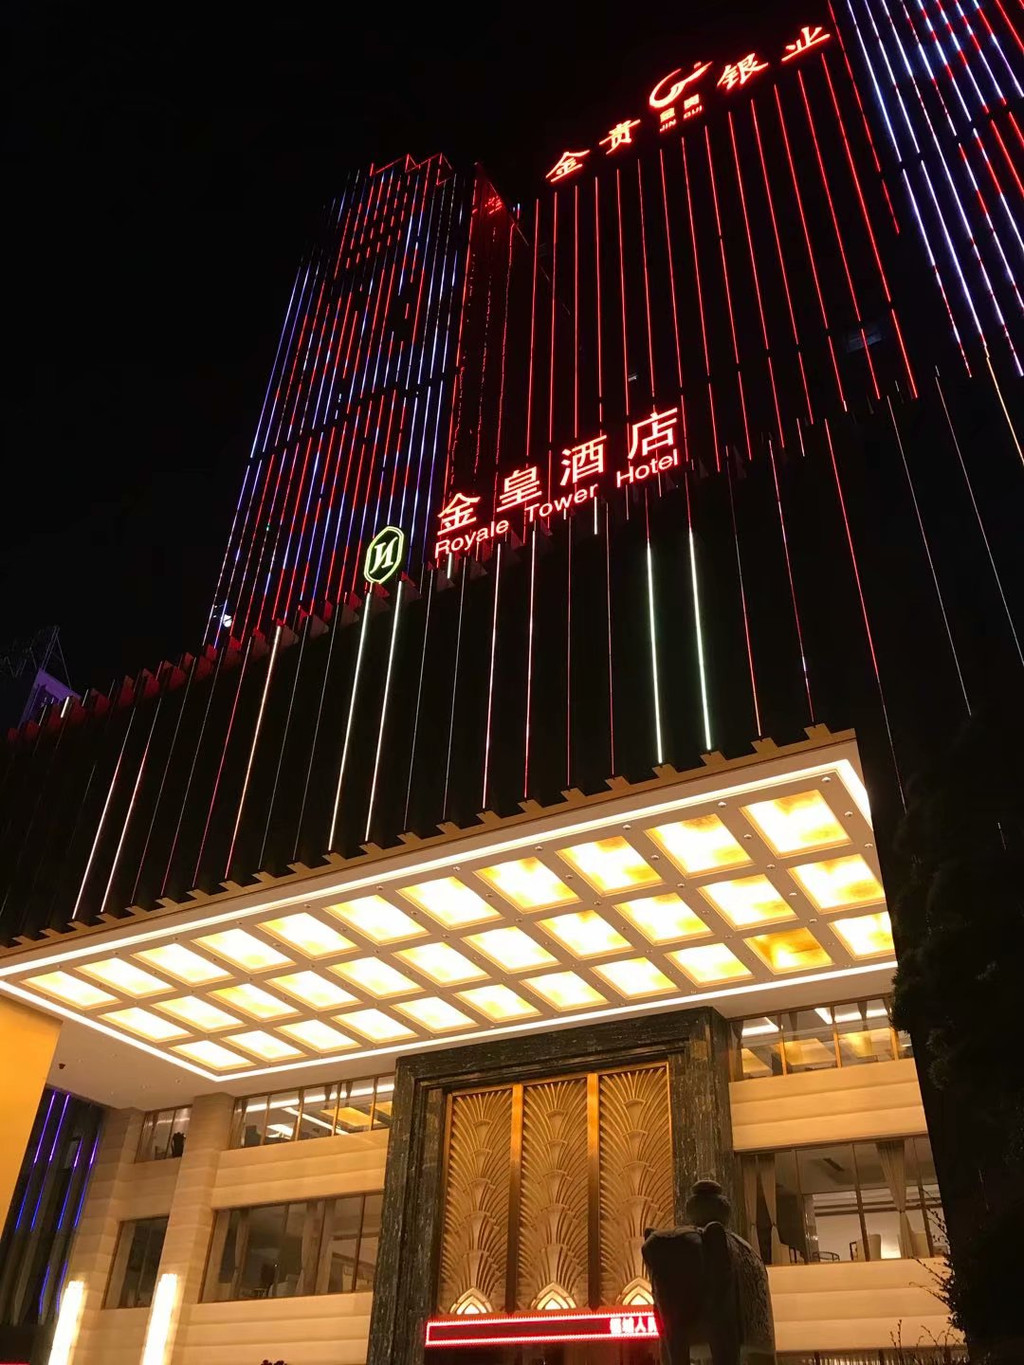 下午四时许到达湖南郴州,入住金皇酒店(准五星).